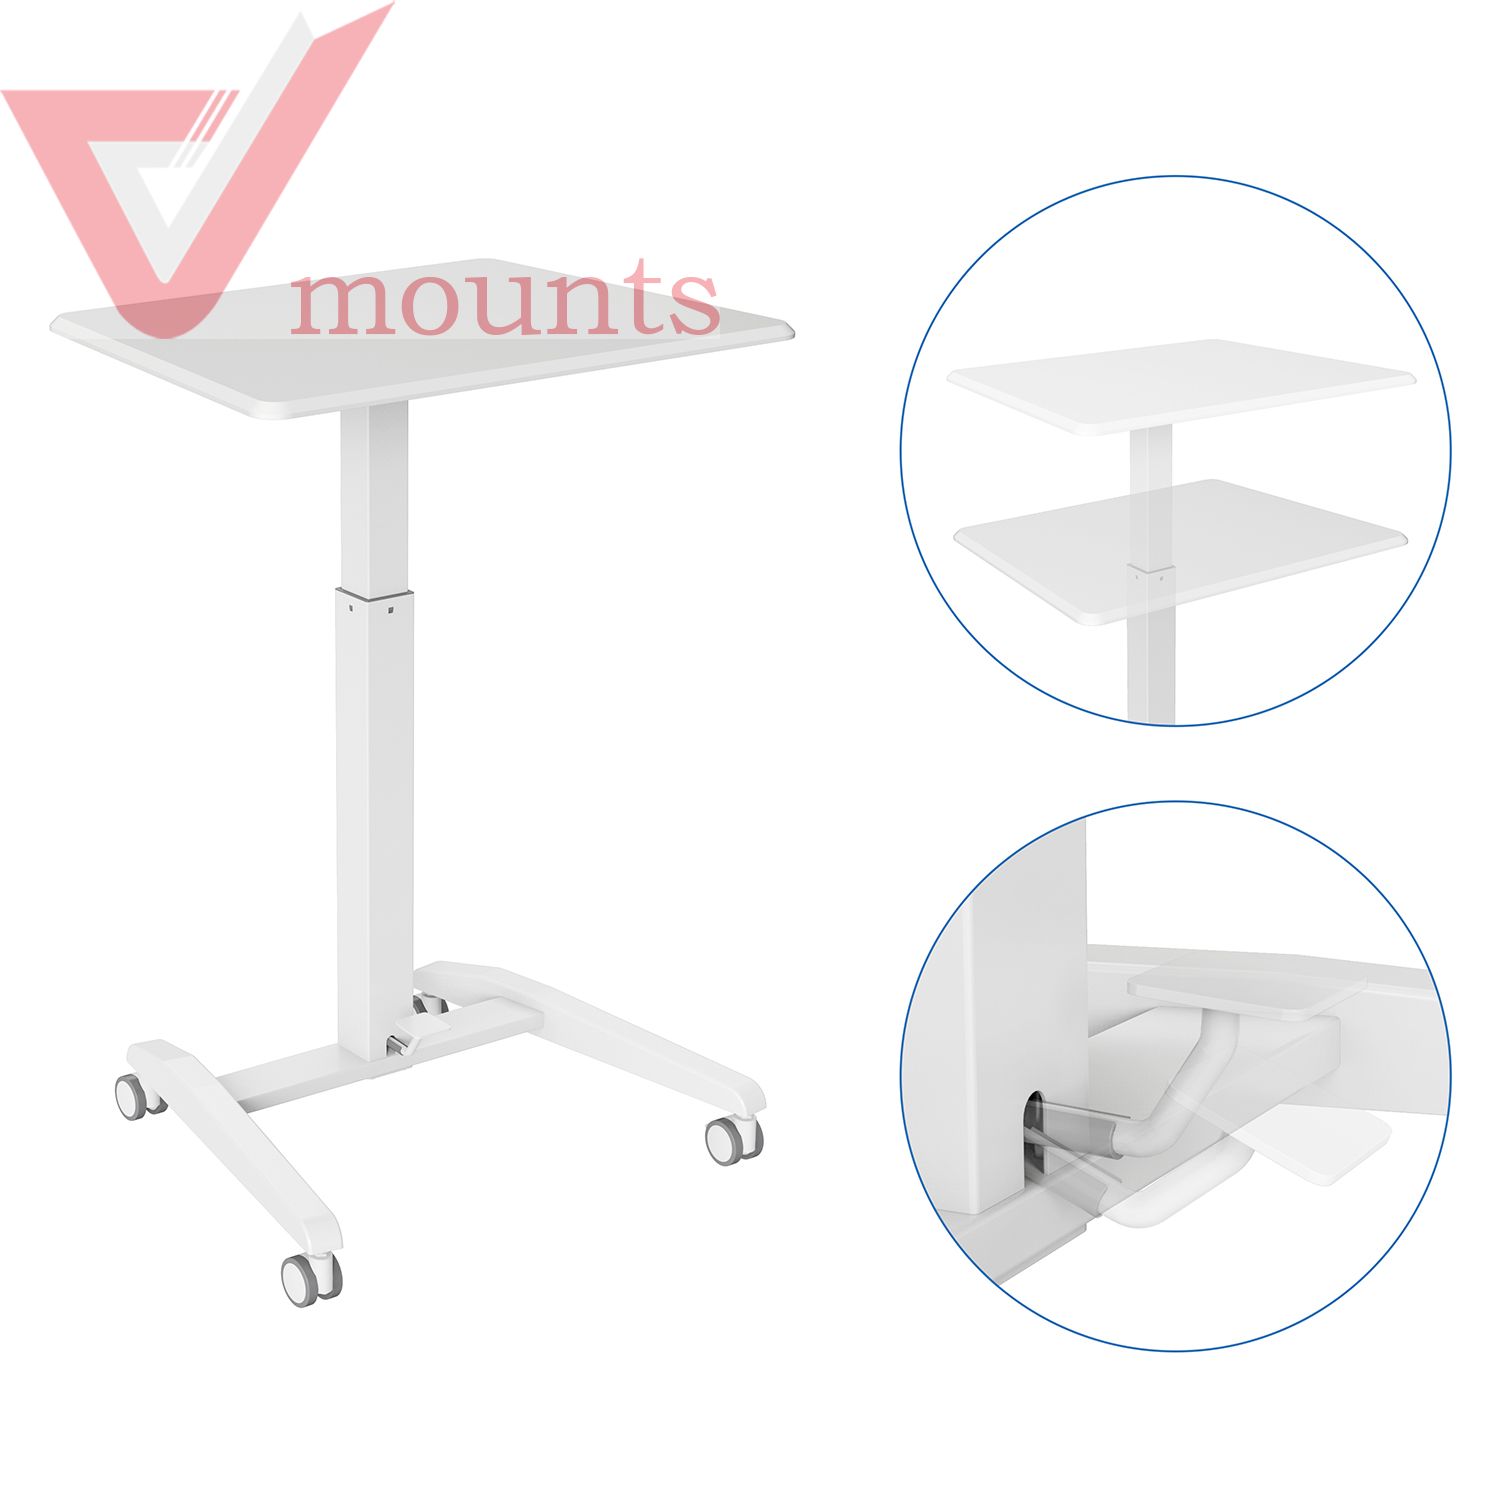 V-mounts SpaceErgo Mobile Manual Height Adjustable Office Desk VM-FDS115A